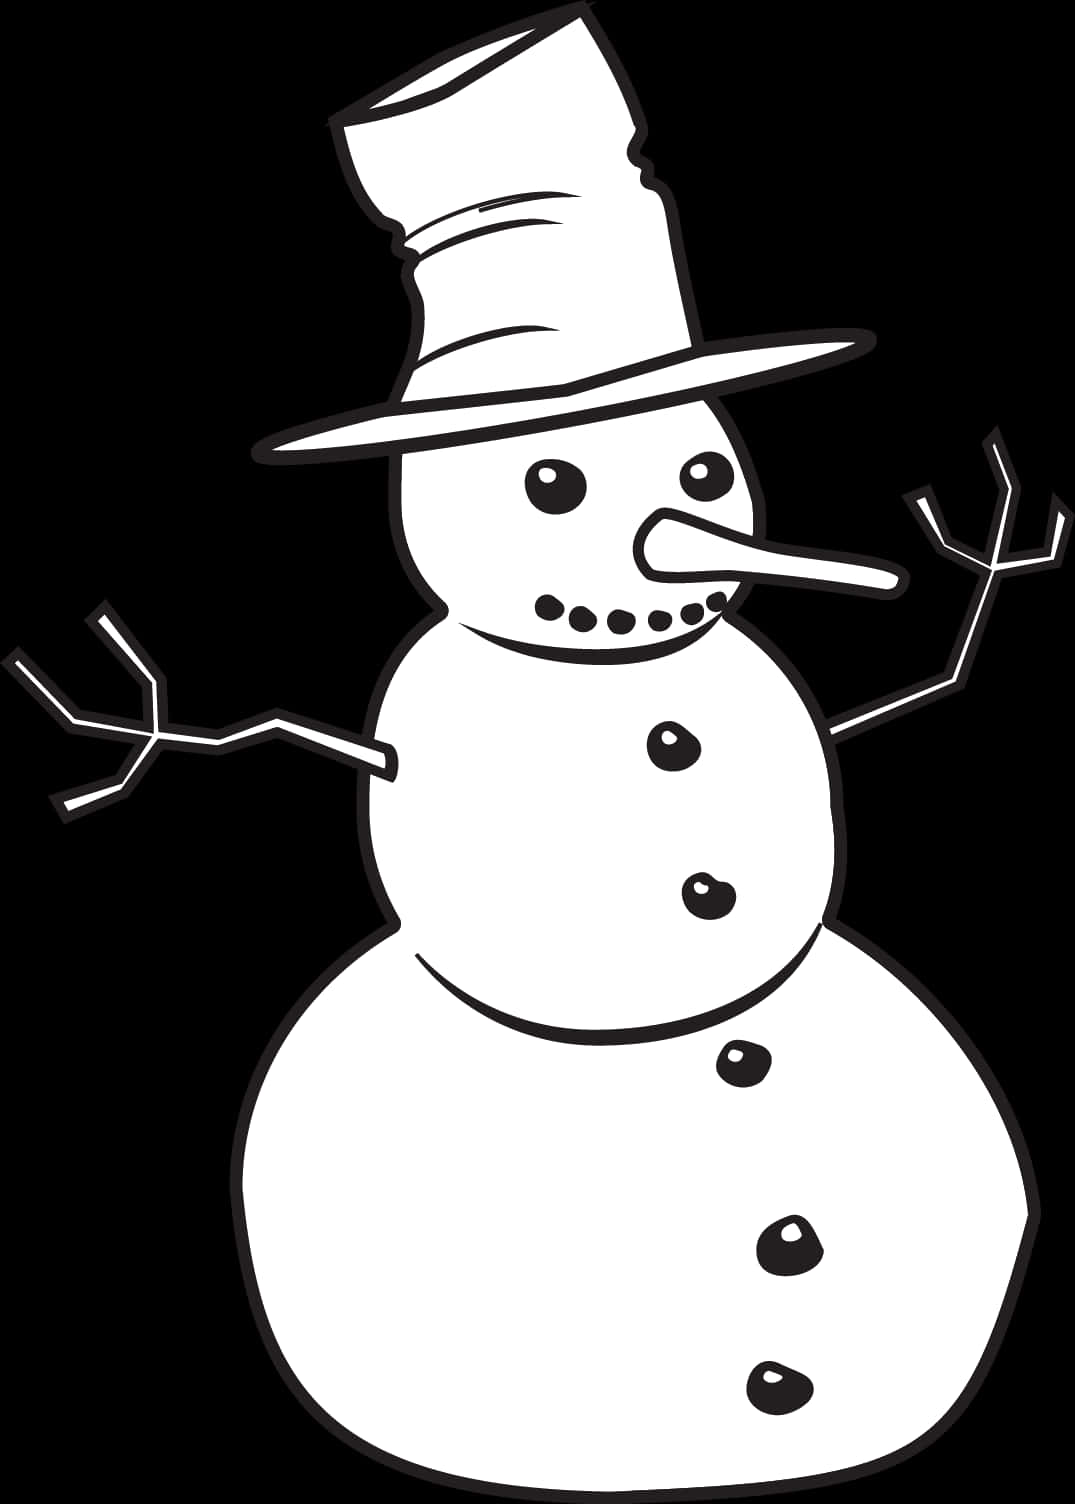 Monochrome Snowman Illustration PNG